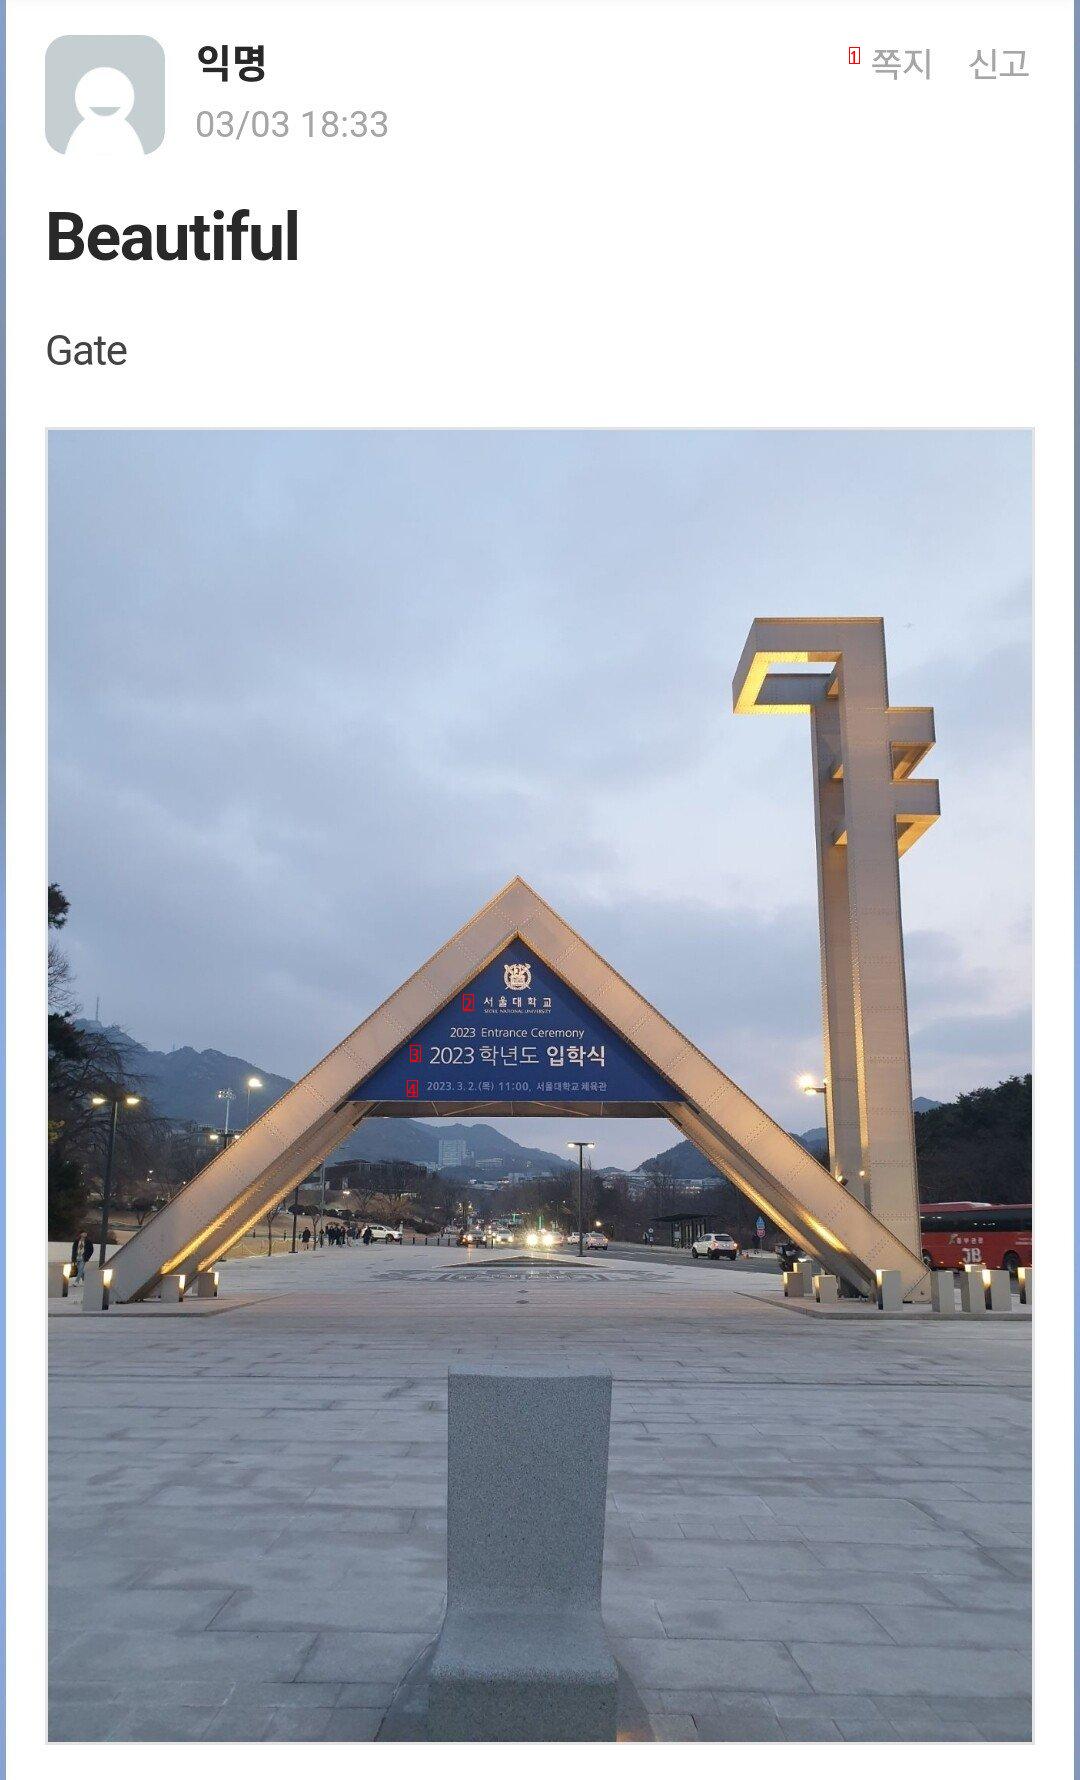 ソウル大学にキャンパスツアーに来た学生たちが残したもの。